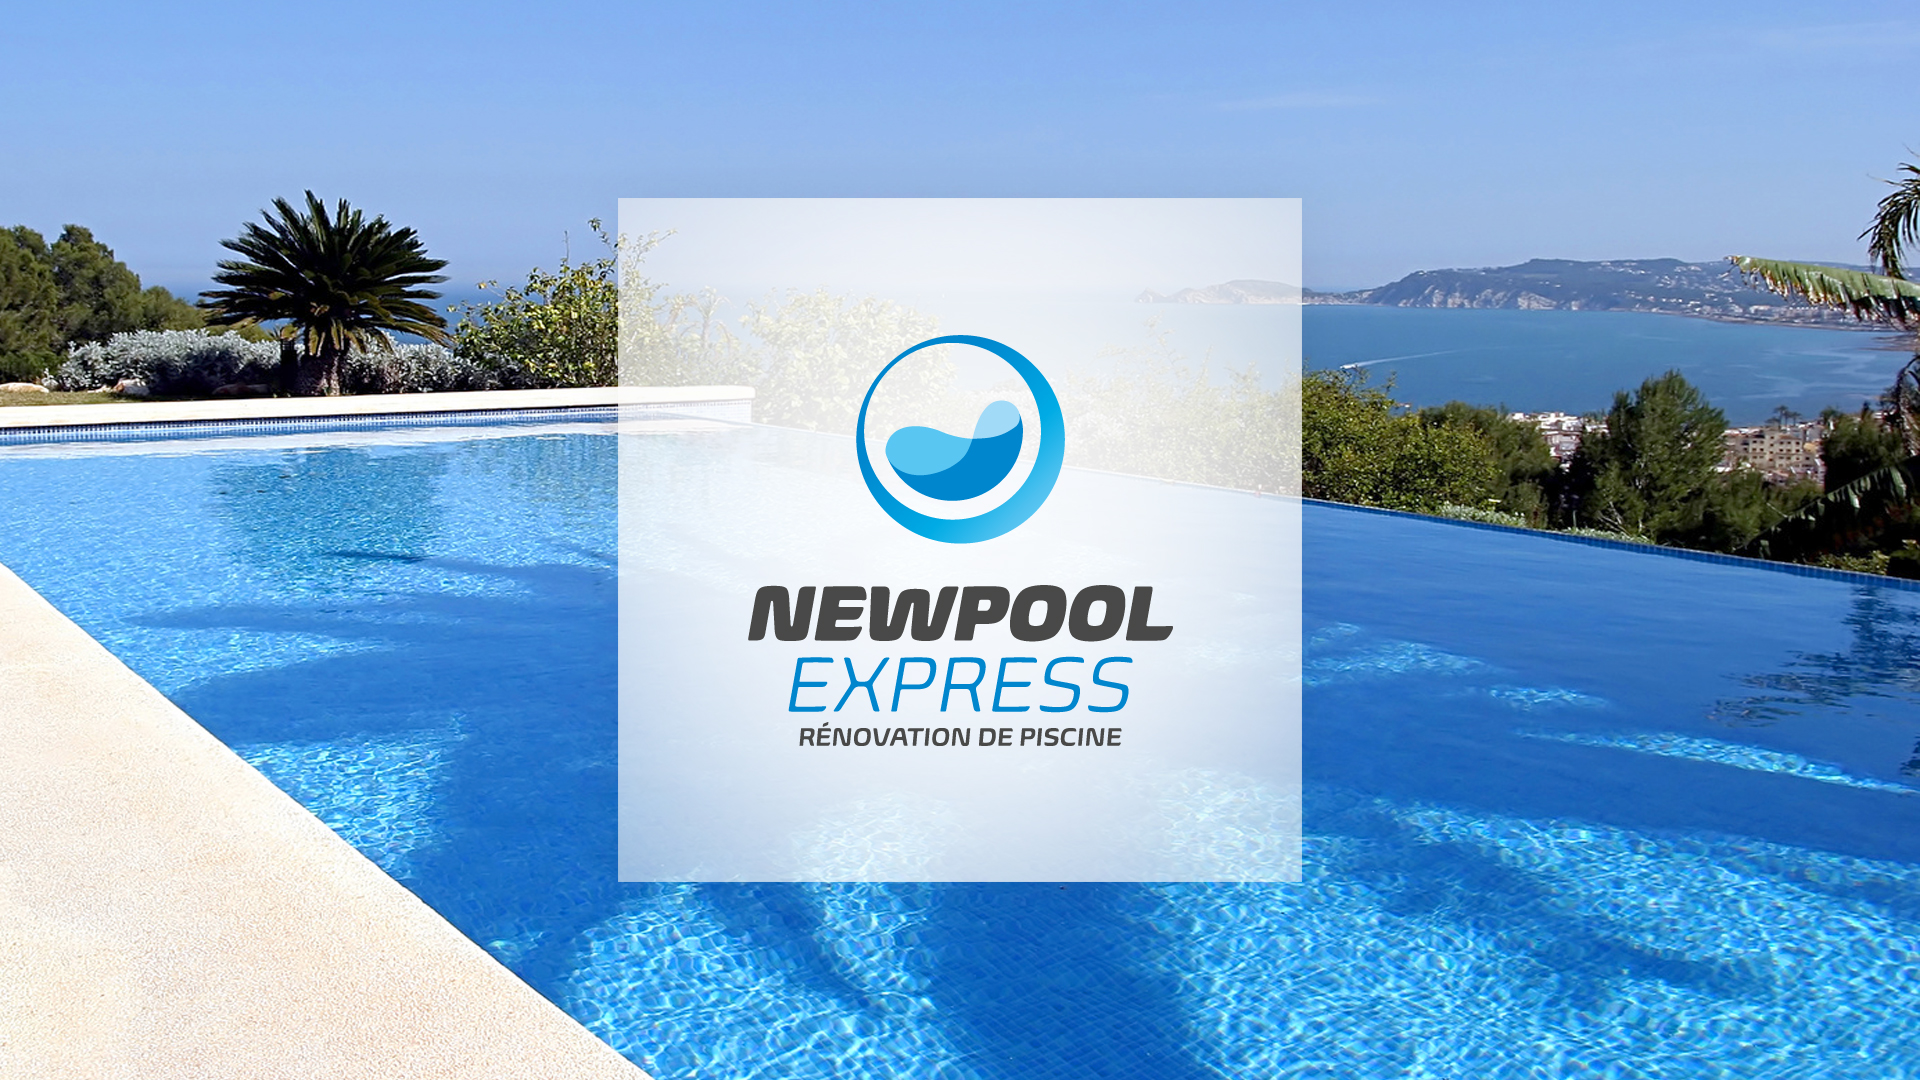 newpoolexpress-creation-logo-identite-visuelle-caconcept-alexis-cretin-graphiste-montpellier